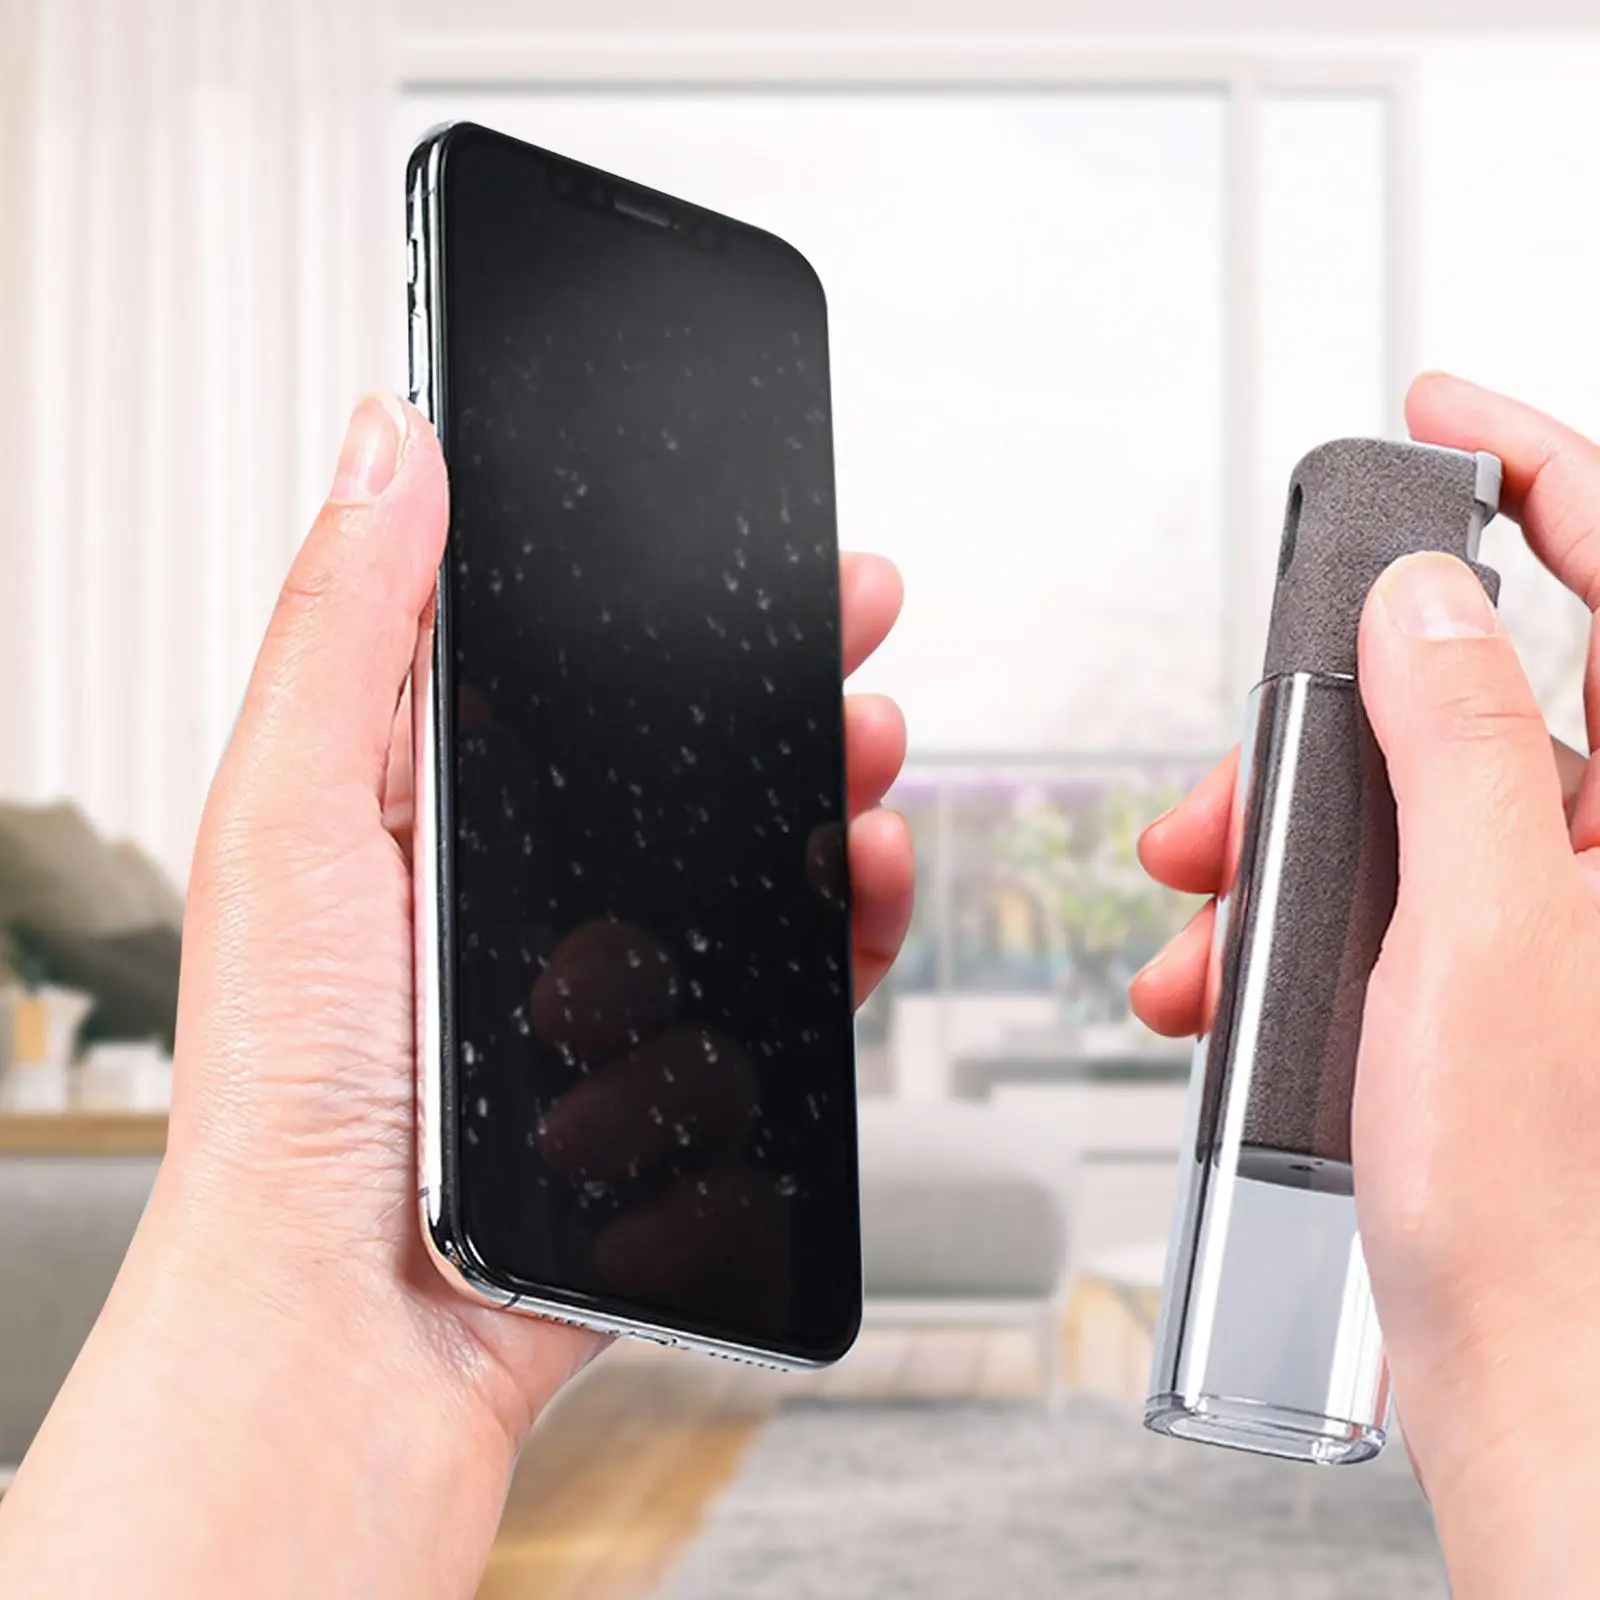 Telefon obrazovka úklid rozprašovací láhev 2 in1 prach odstranění čistič nářadí pro jablko iPhone ipad počítač TV mikrovlákno s kapalina